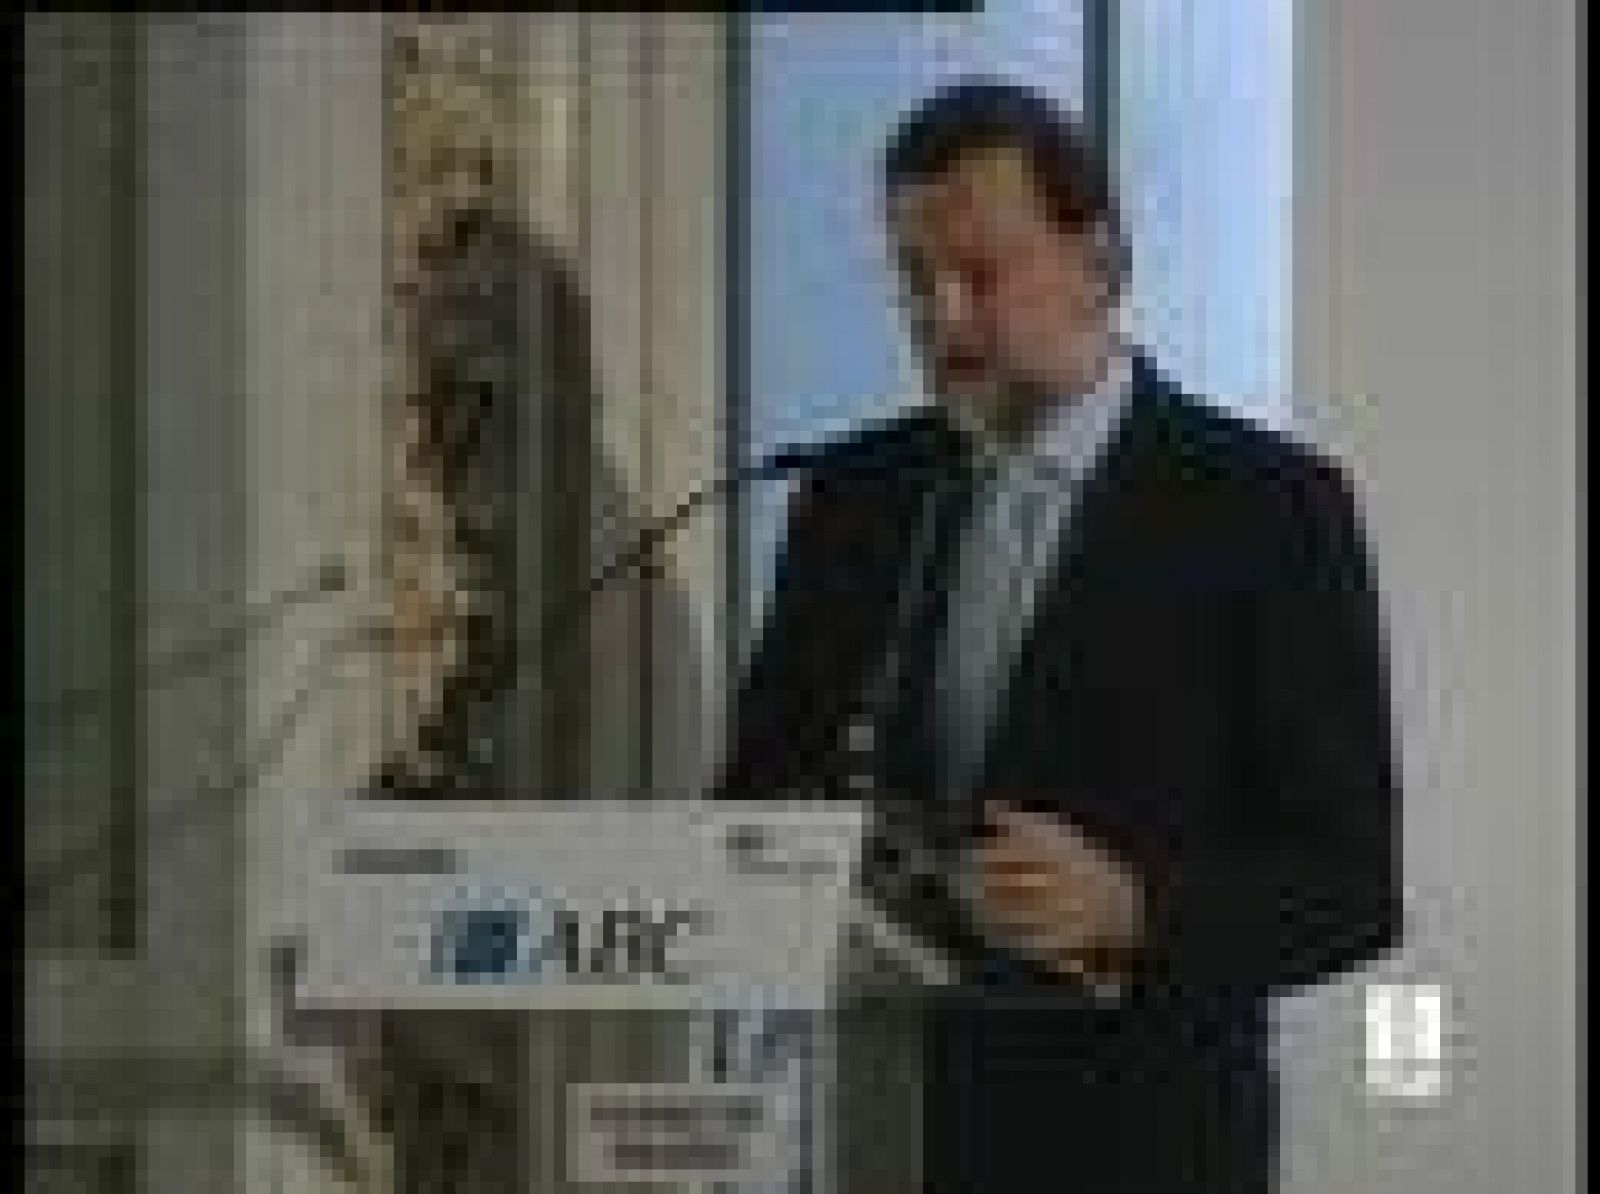  Rajoy, en el foro ABC, califica de "broma" las medidas de Zapatero contra la crisis